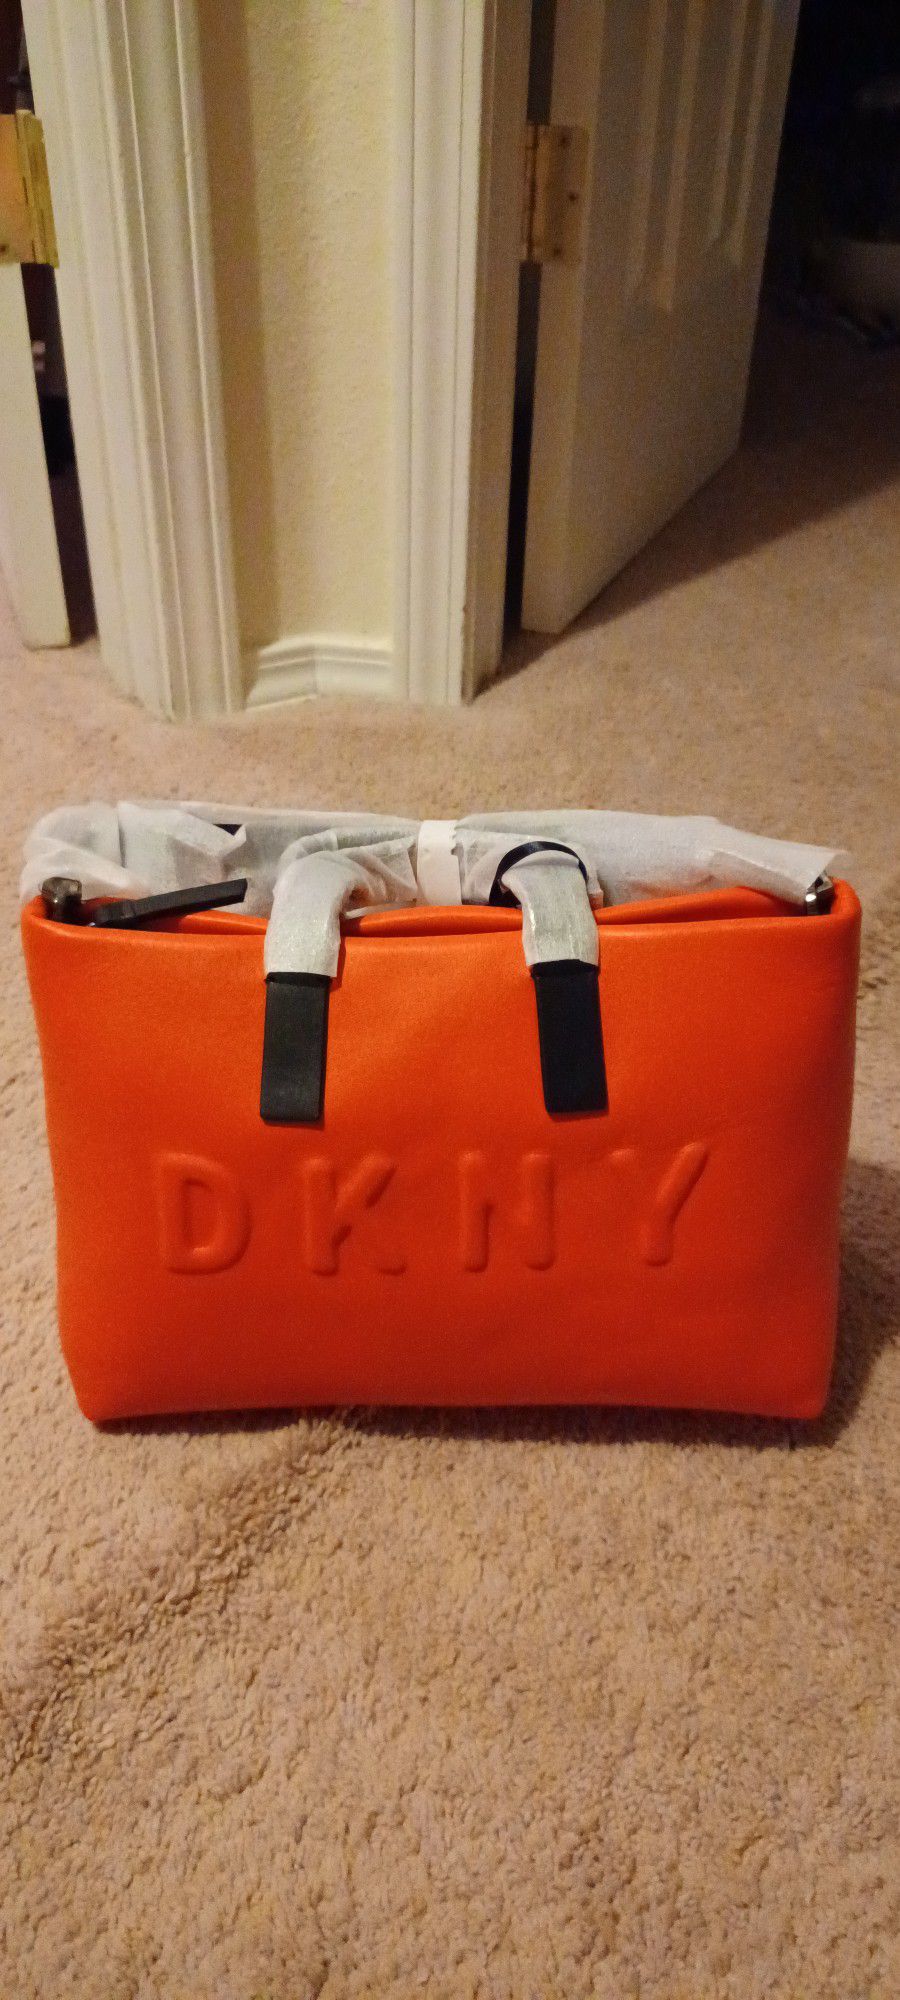 DKNY leather Bag 